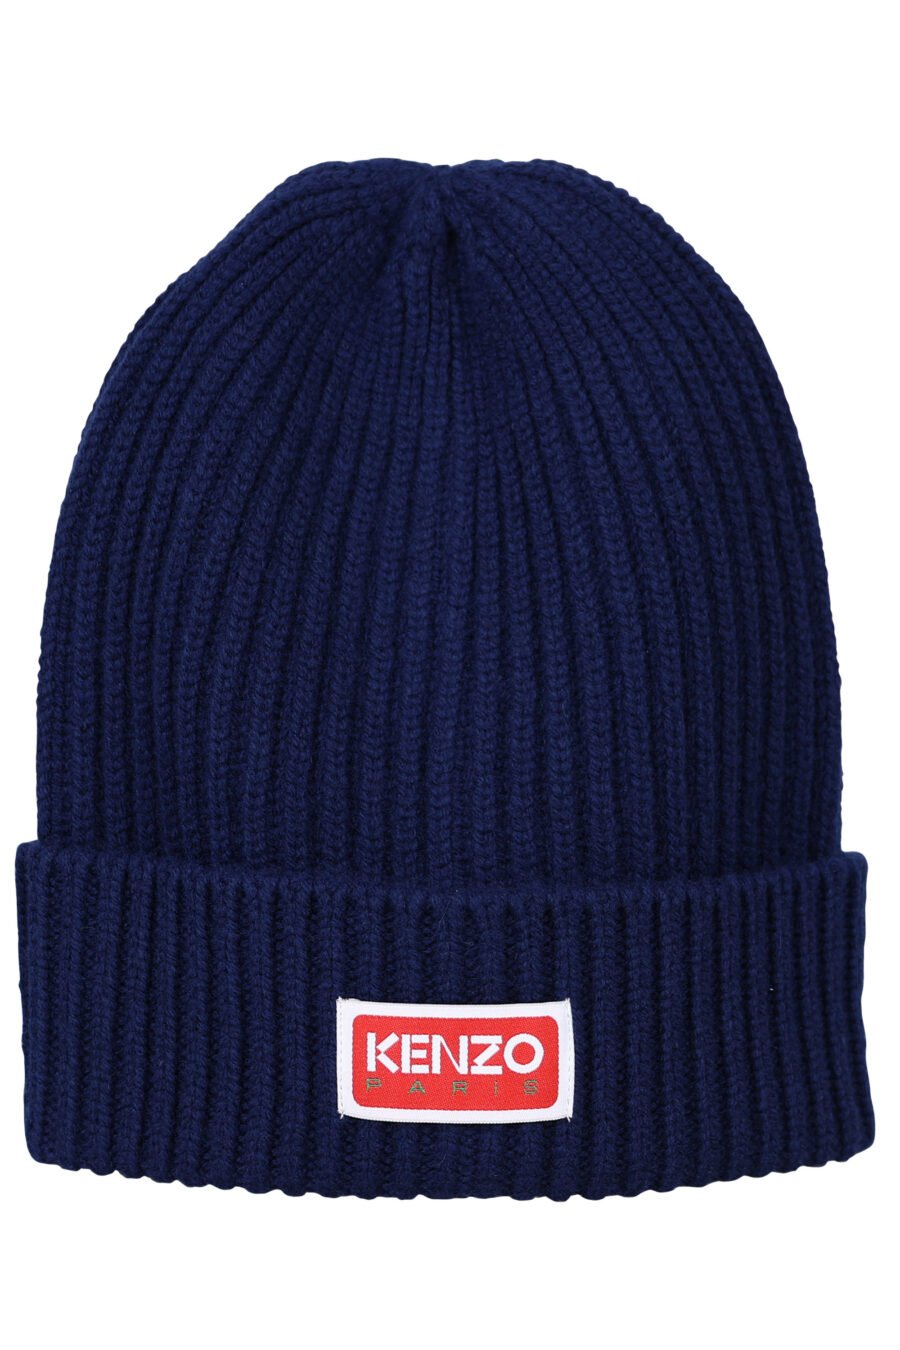 Gorro azul oscuro con logo "kenzo paris" - 3612230524859